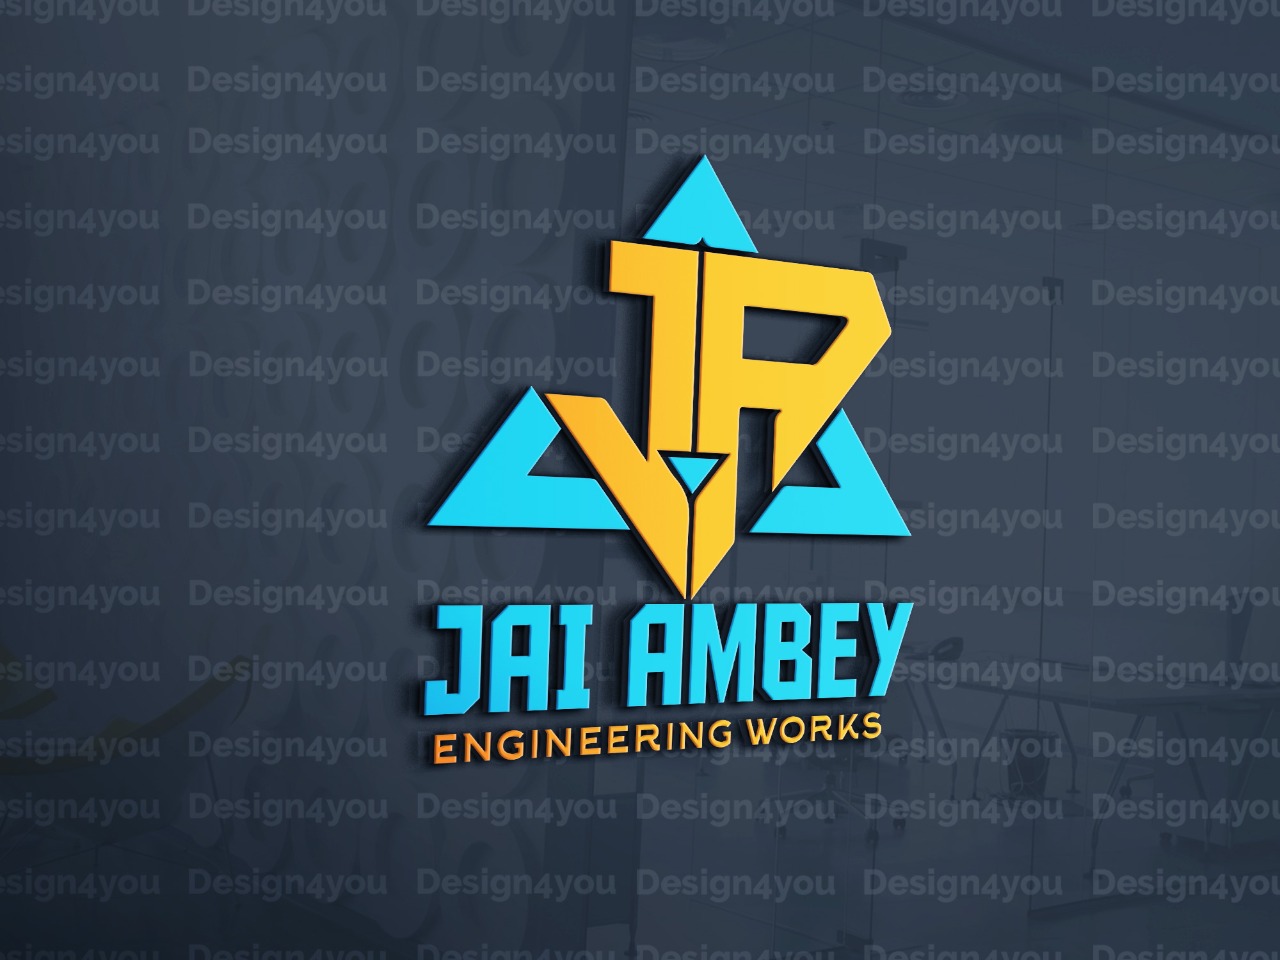 JAI AMBEY ENGINEERING WORKS